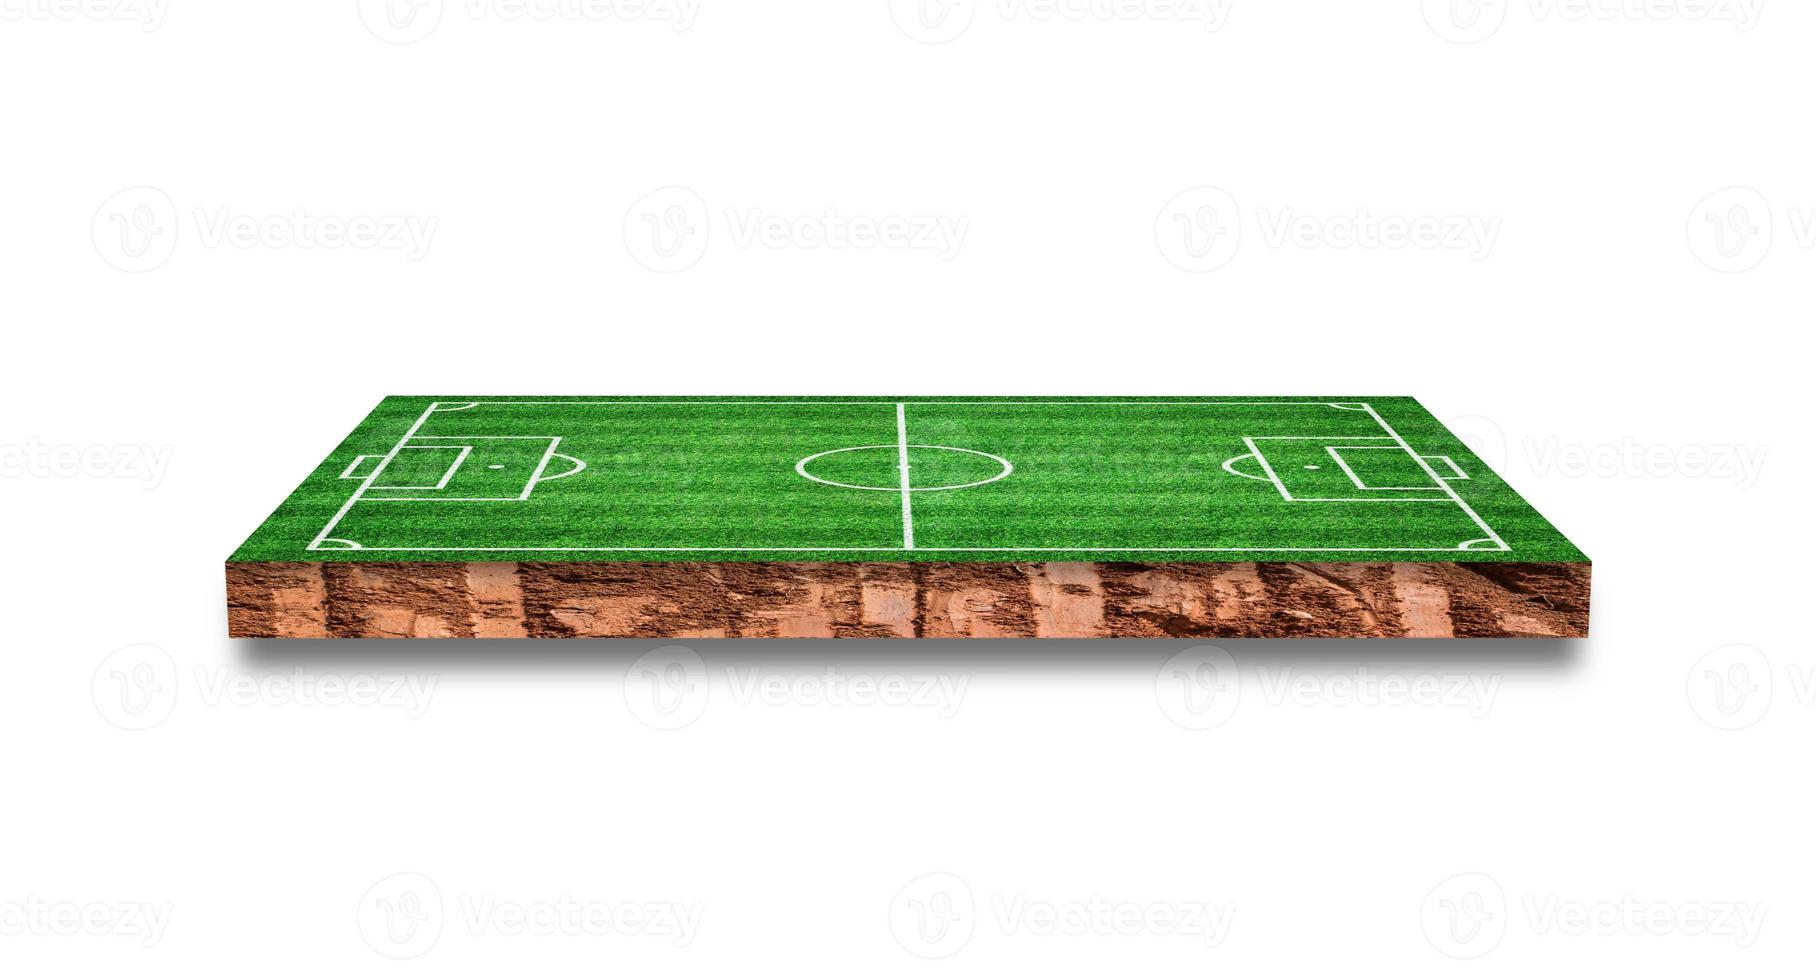 bodem dwarsdoorsnede met gras voetbalveld geïsoleerd op een witte achtergrond. 3D-rendering. foto